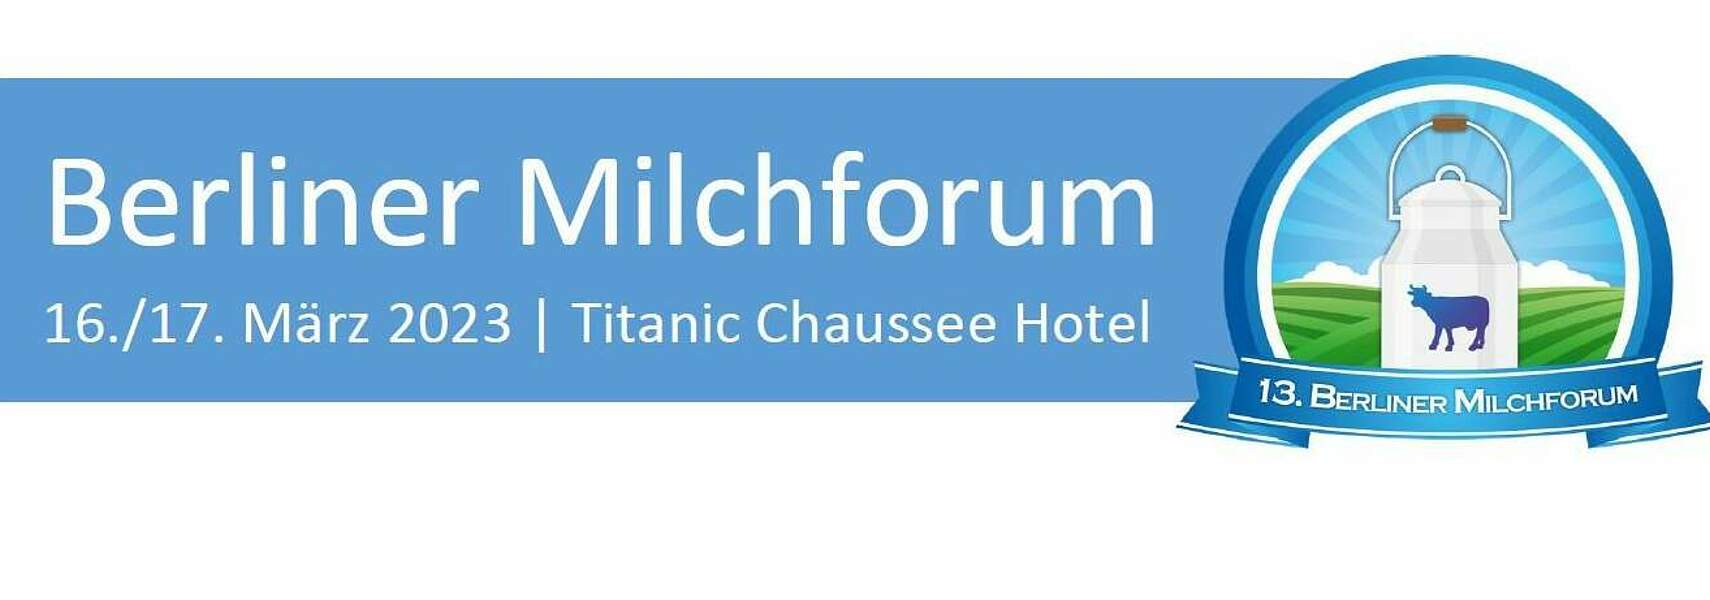 13. Berliner Milchforum am 16./17. März 2023